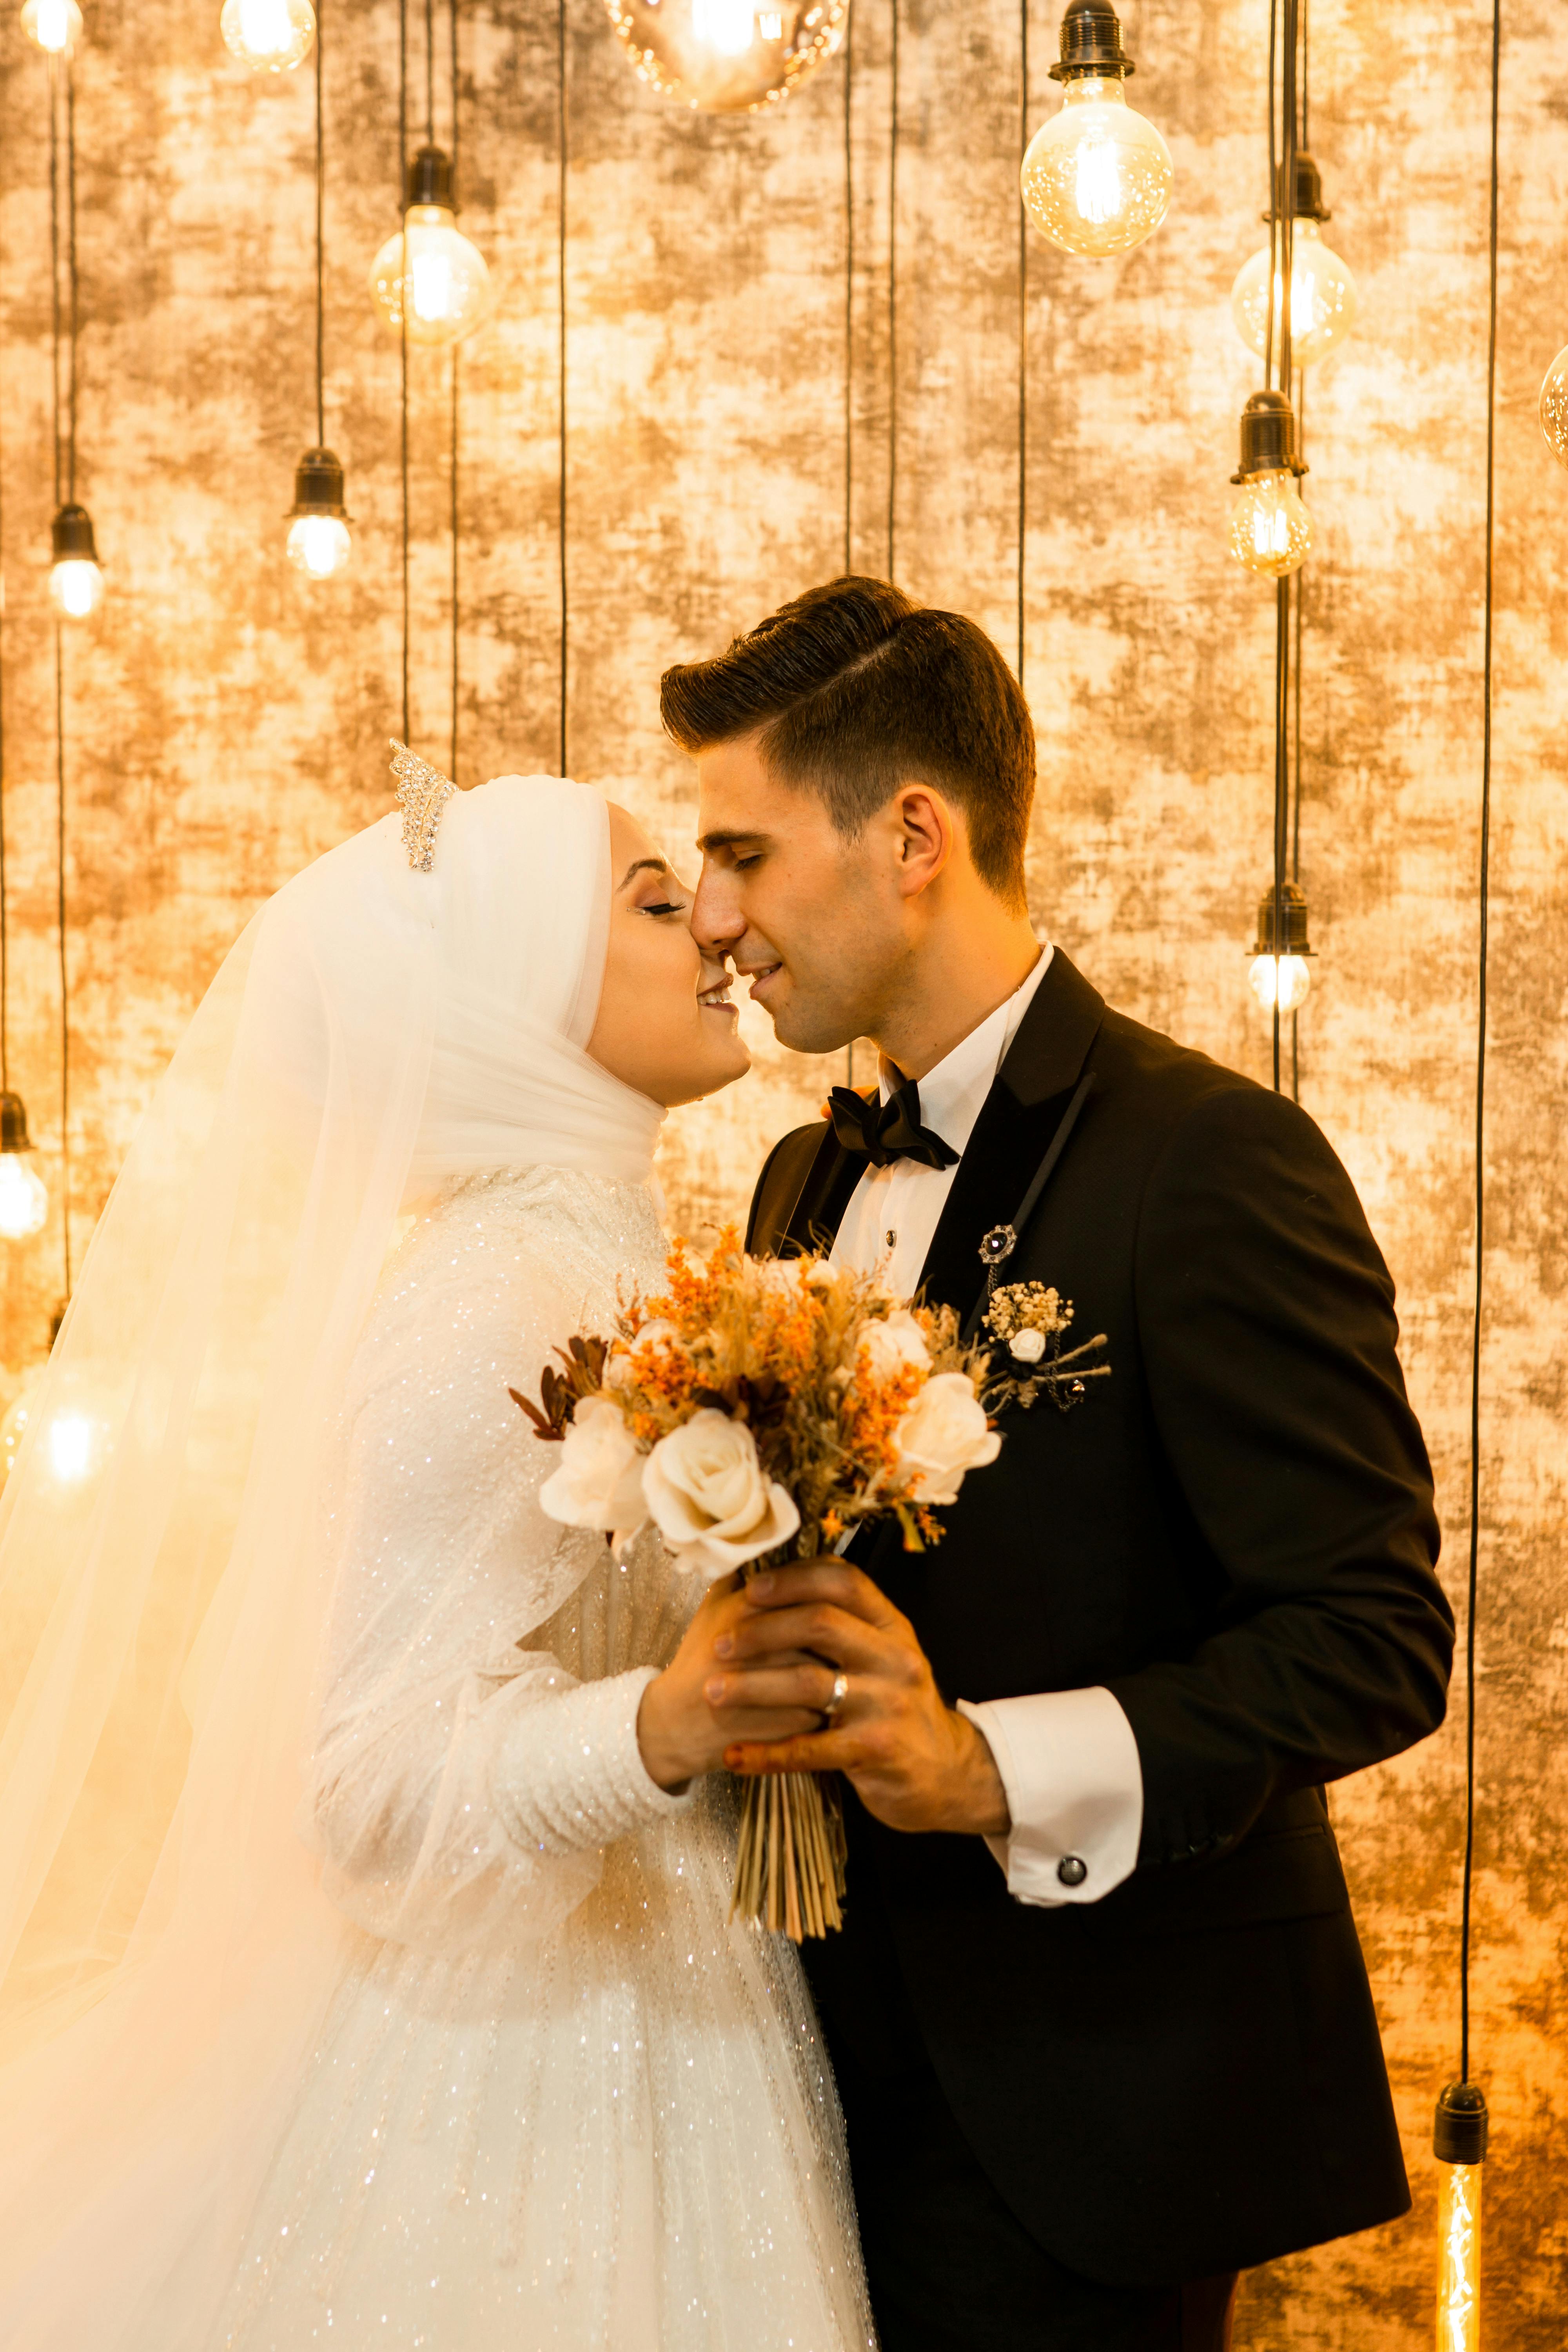 Muslim Wedding Vows Template: Wording & Info